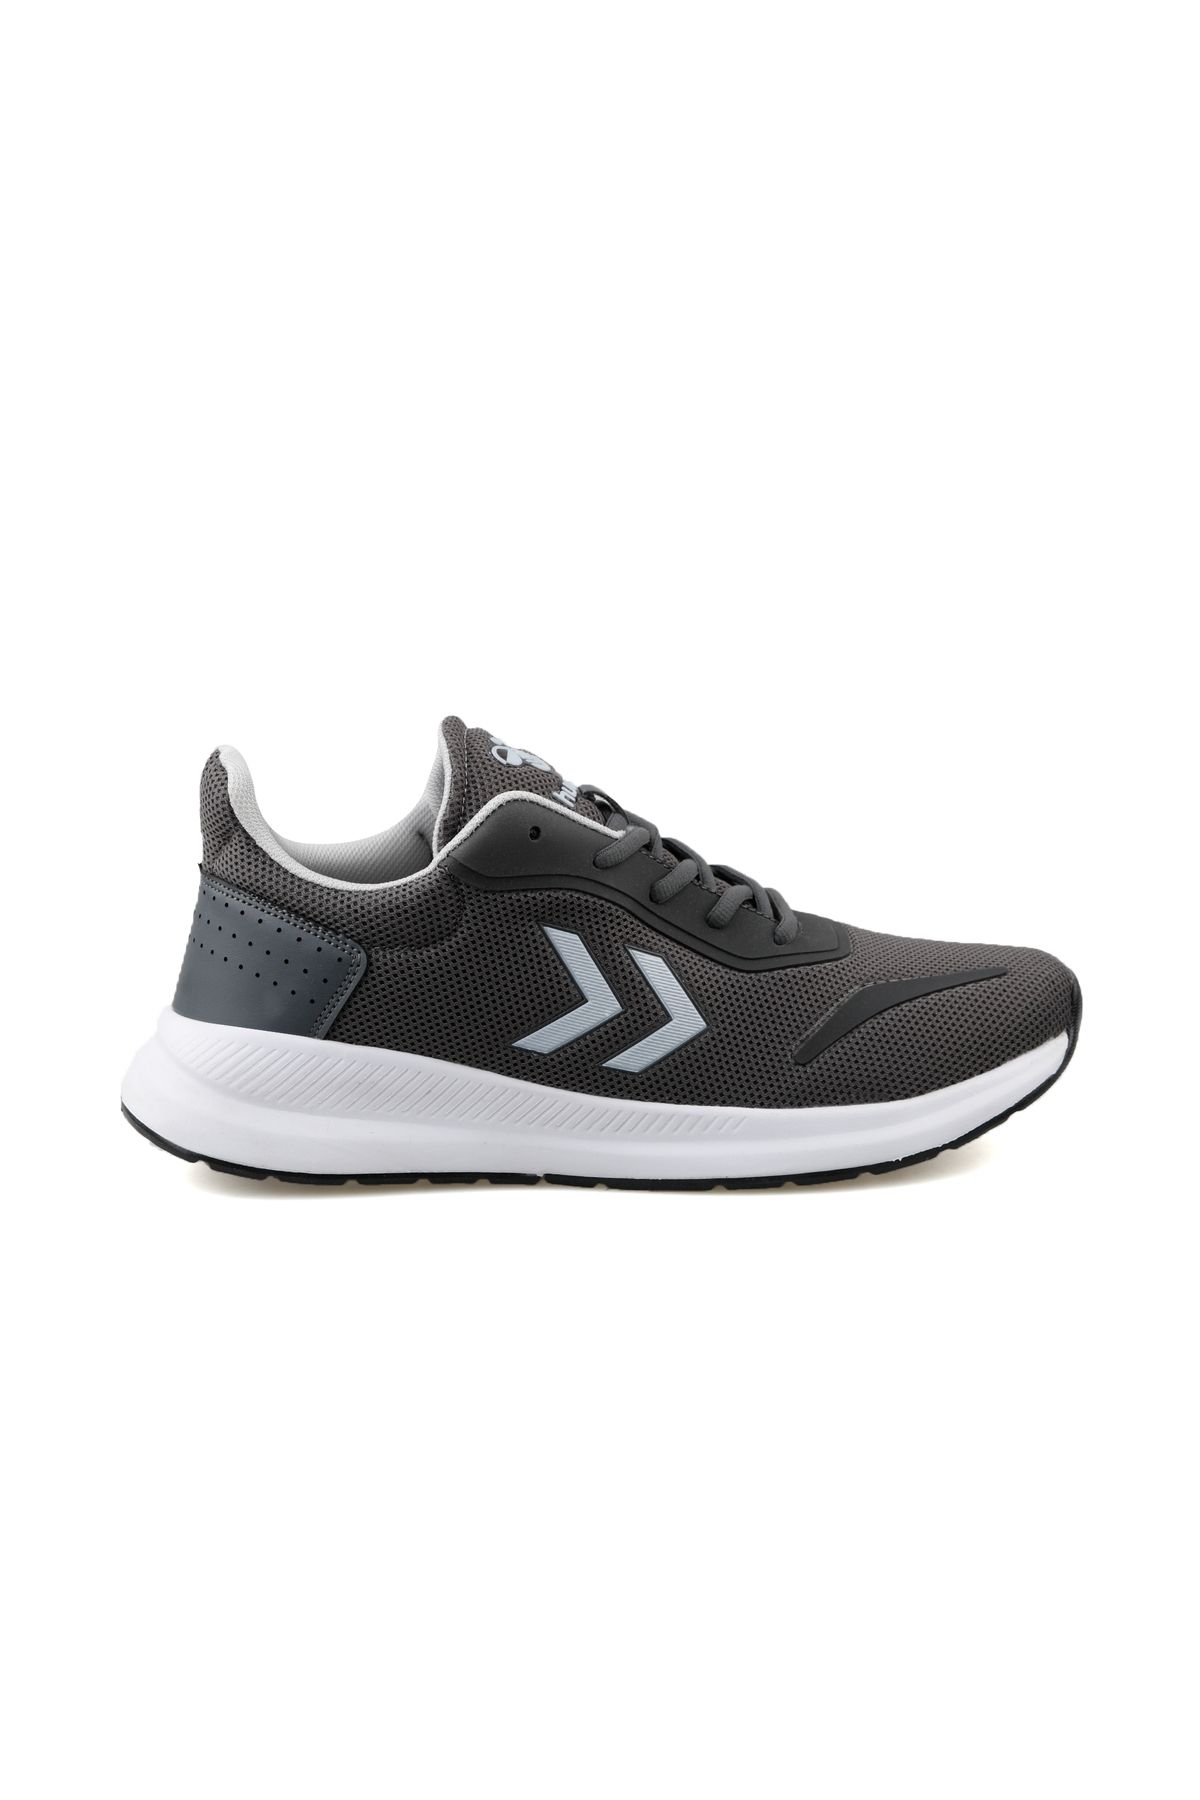 hummel Jumper Unisex Günlük Spor Ayakkabı Yürüyüş Koşu Ayakkabı Sneaker